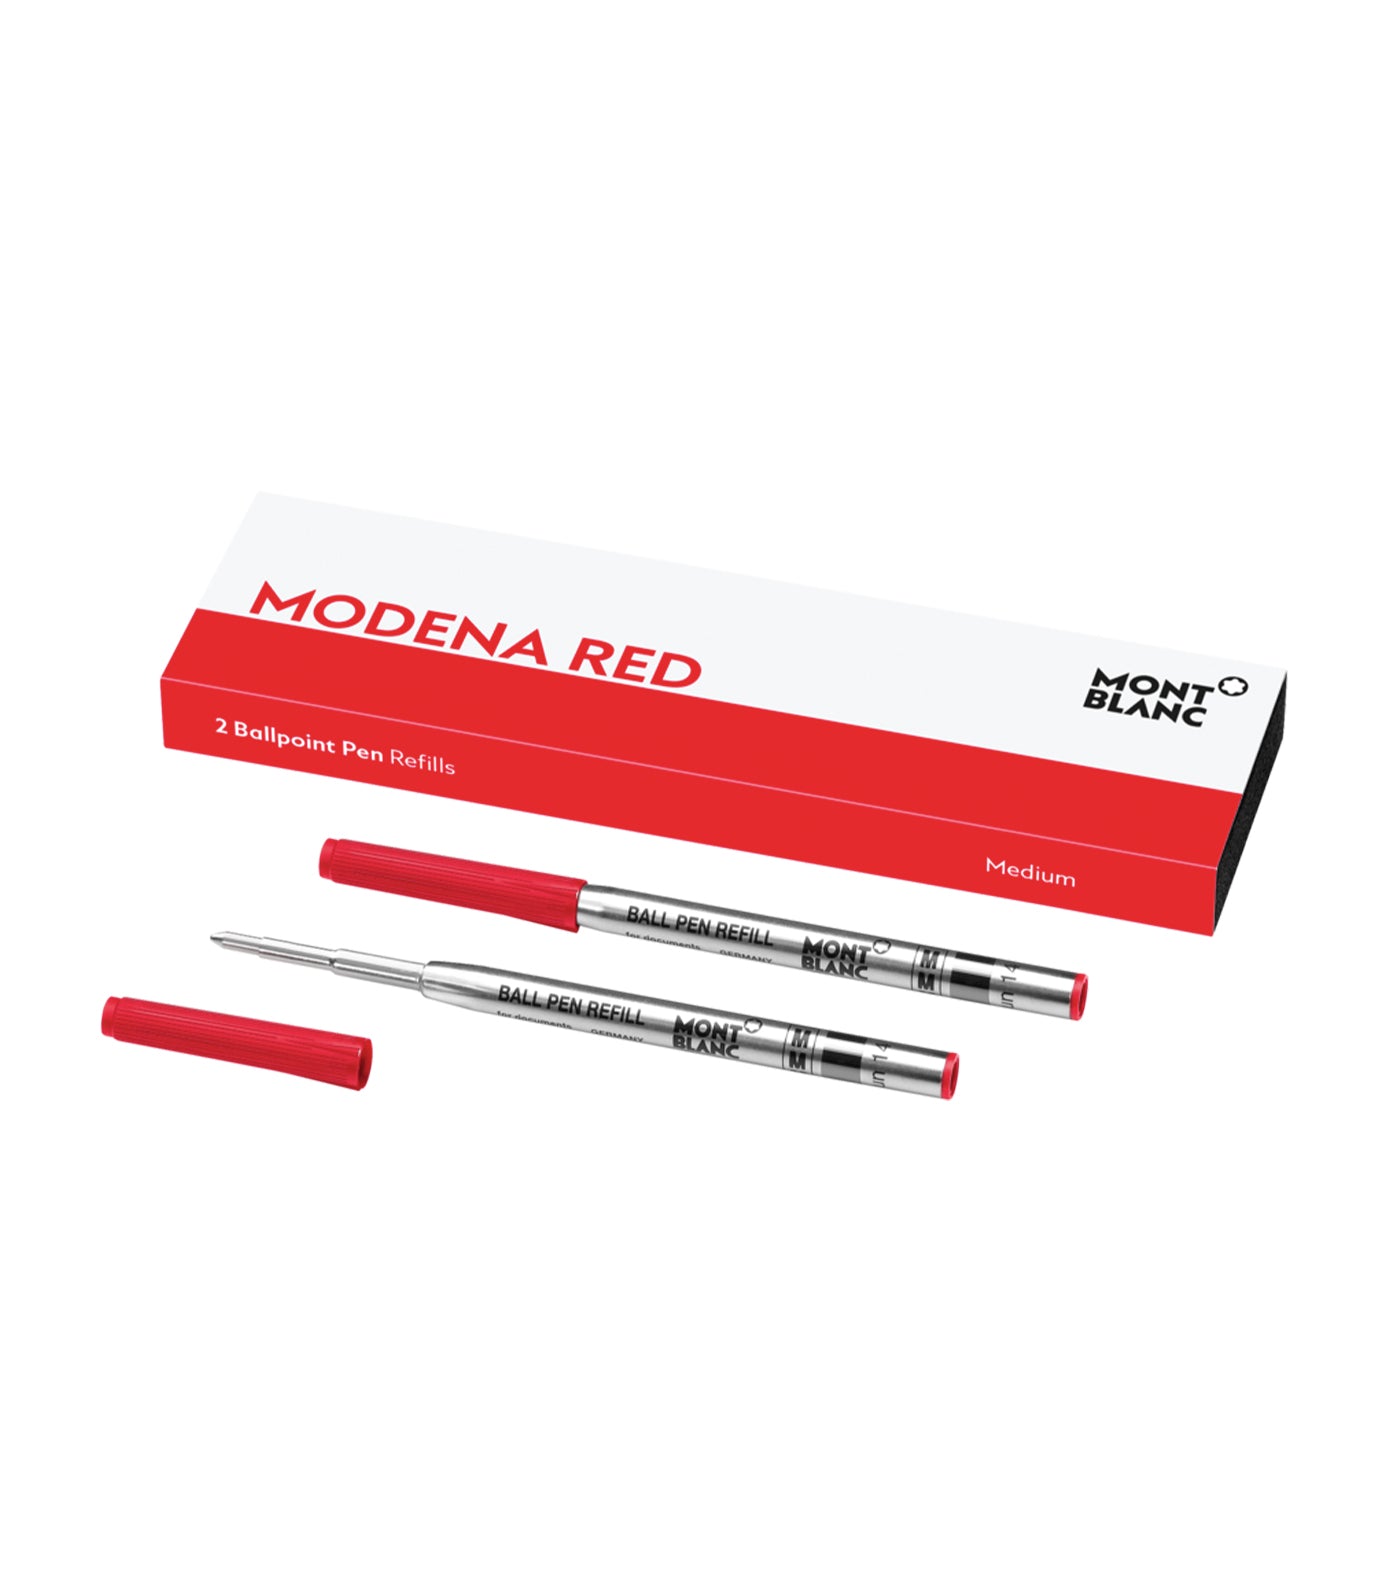 2 Ballpoint Pen Refills Medium Modena Red